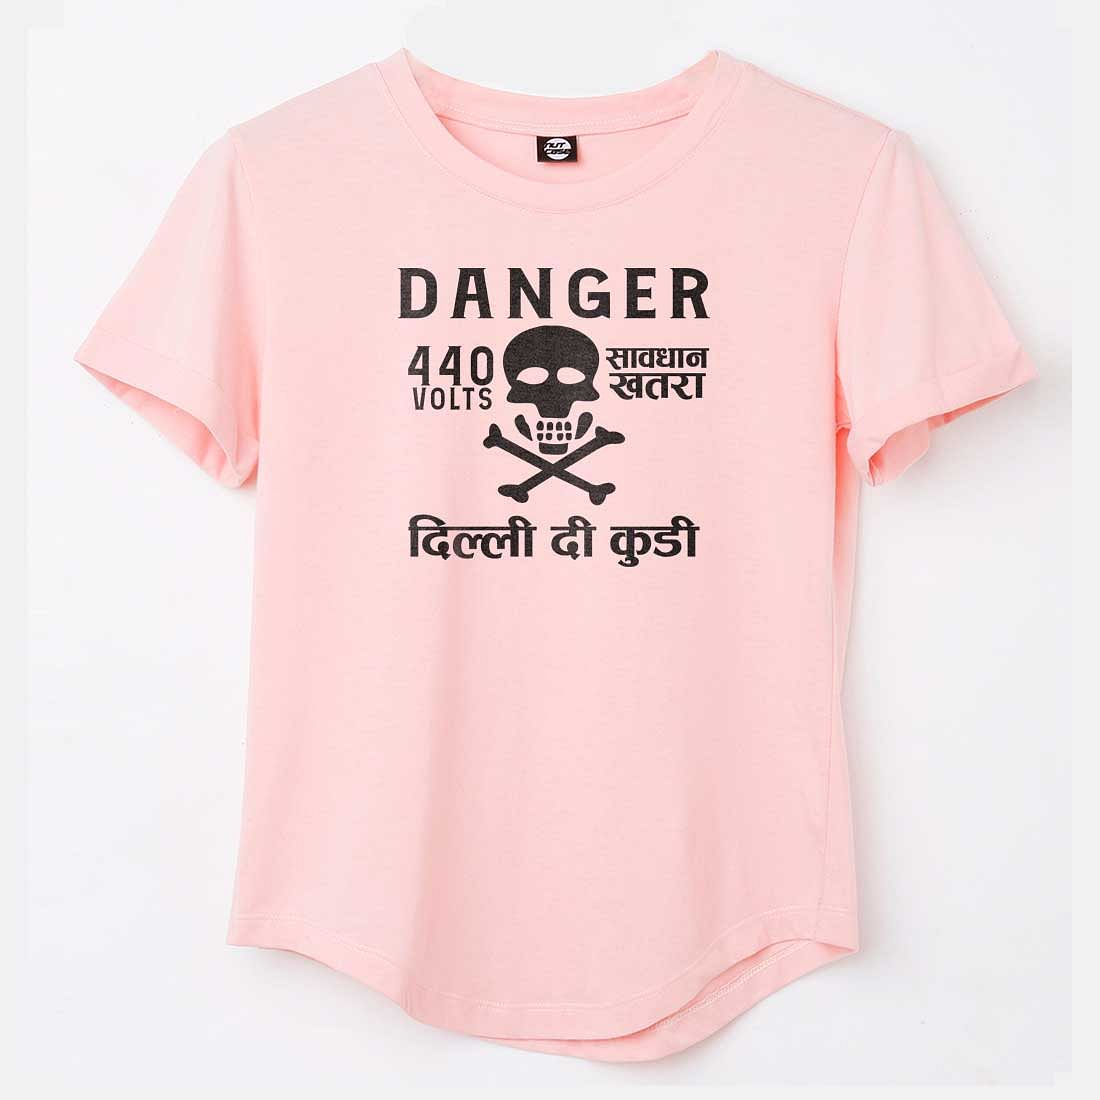 Funny Tees City Tshirts - Danger Delhi di Kuddi 44 volts Nutcase